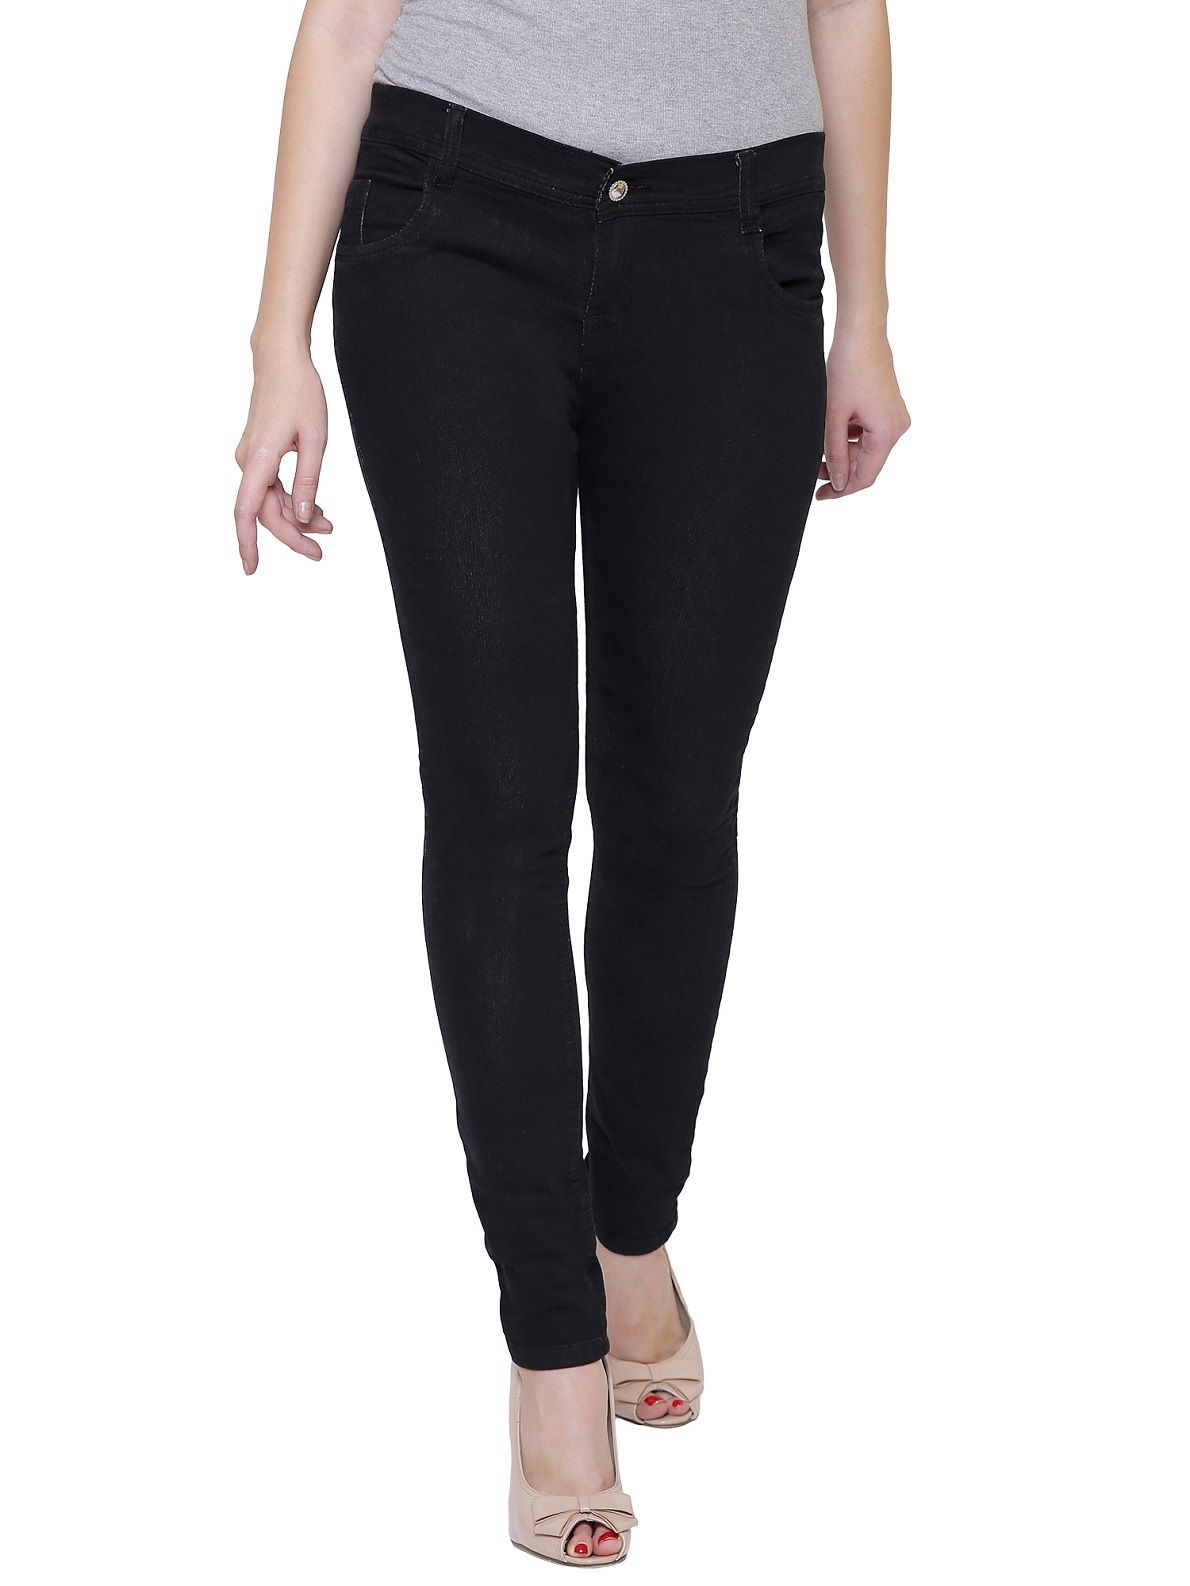 Nj's Denim Jeans - Black - Buy Nj's Denim Jeans - Black Online at Best